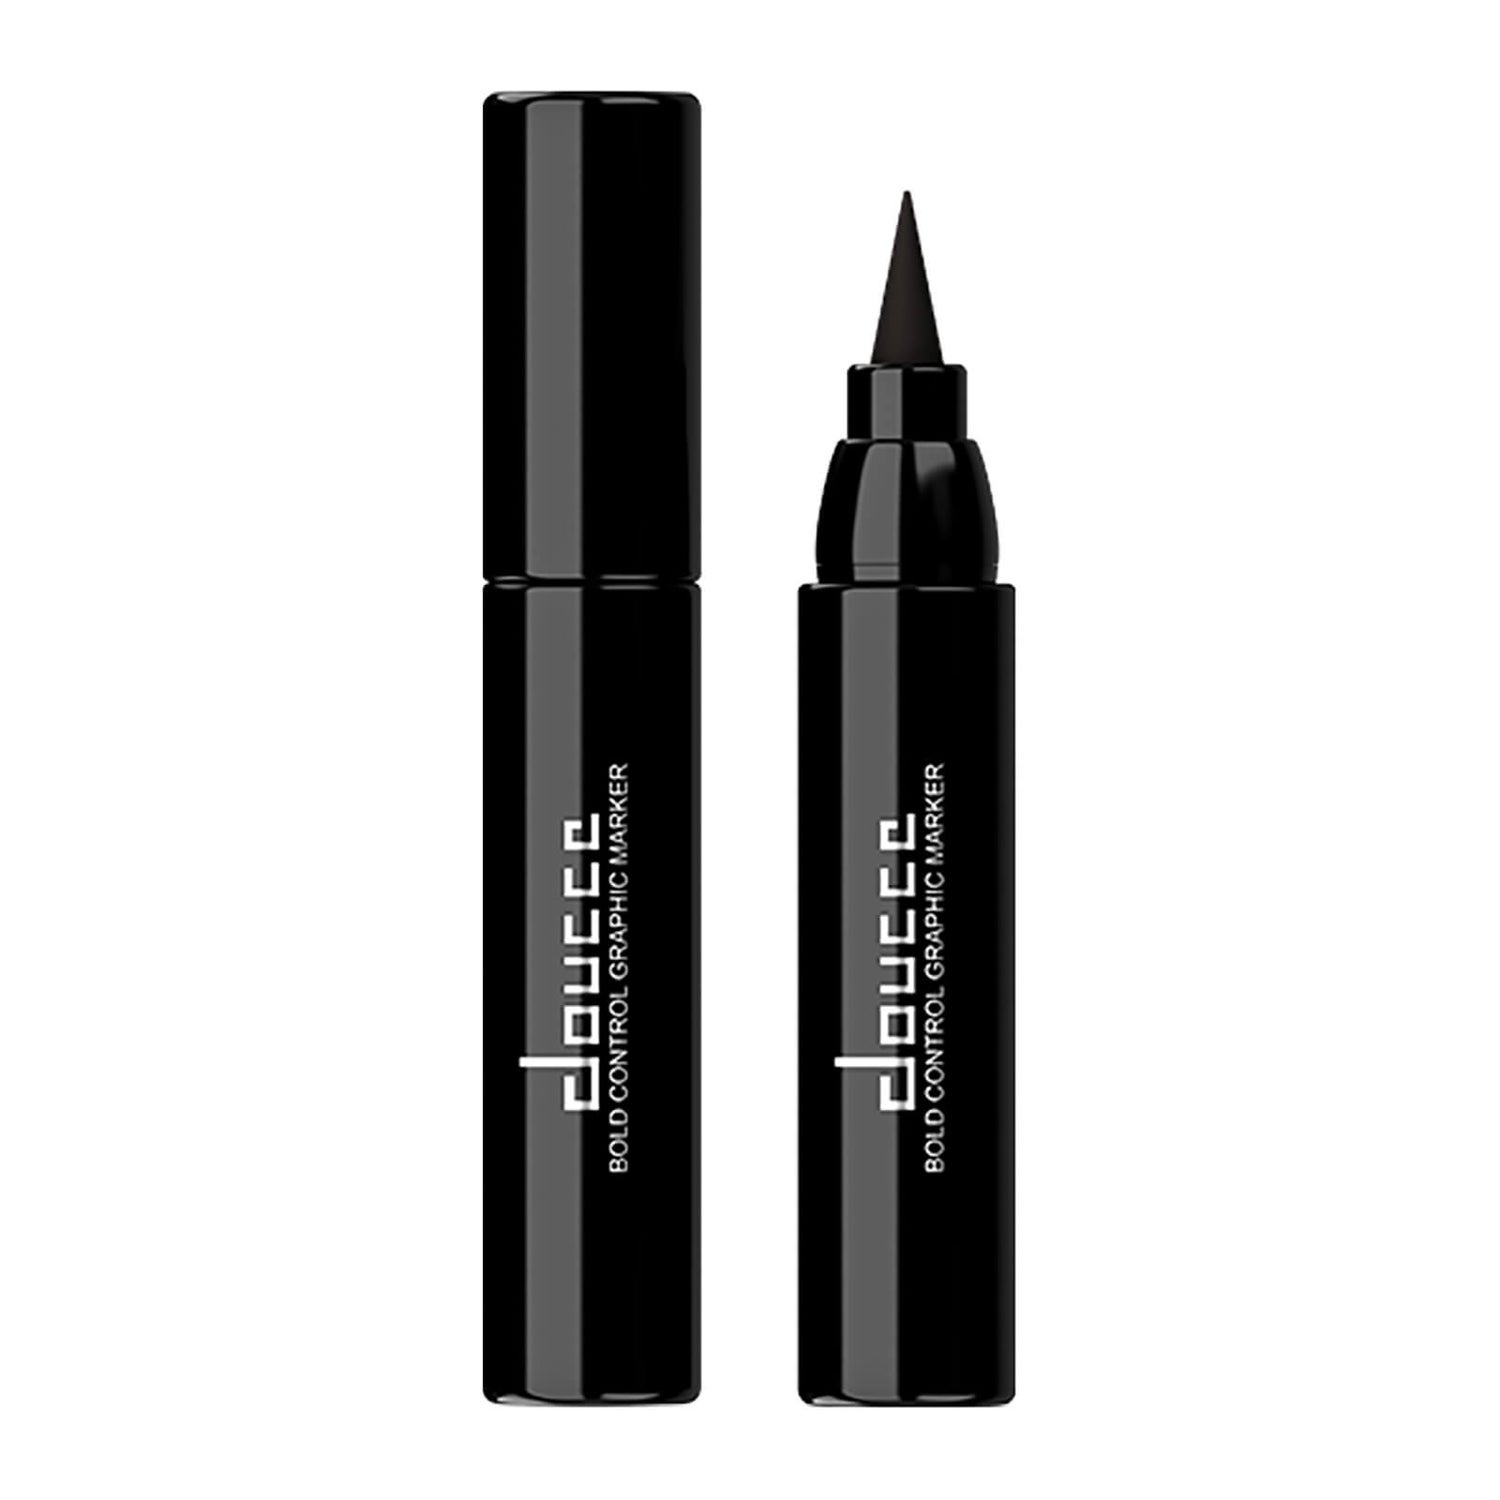 Eyeliner Feutre Bold Control Graphic doucce – Noir 2,5 g